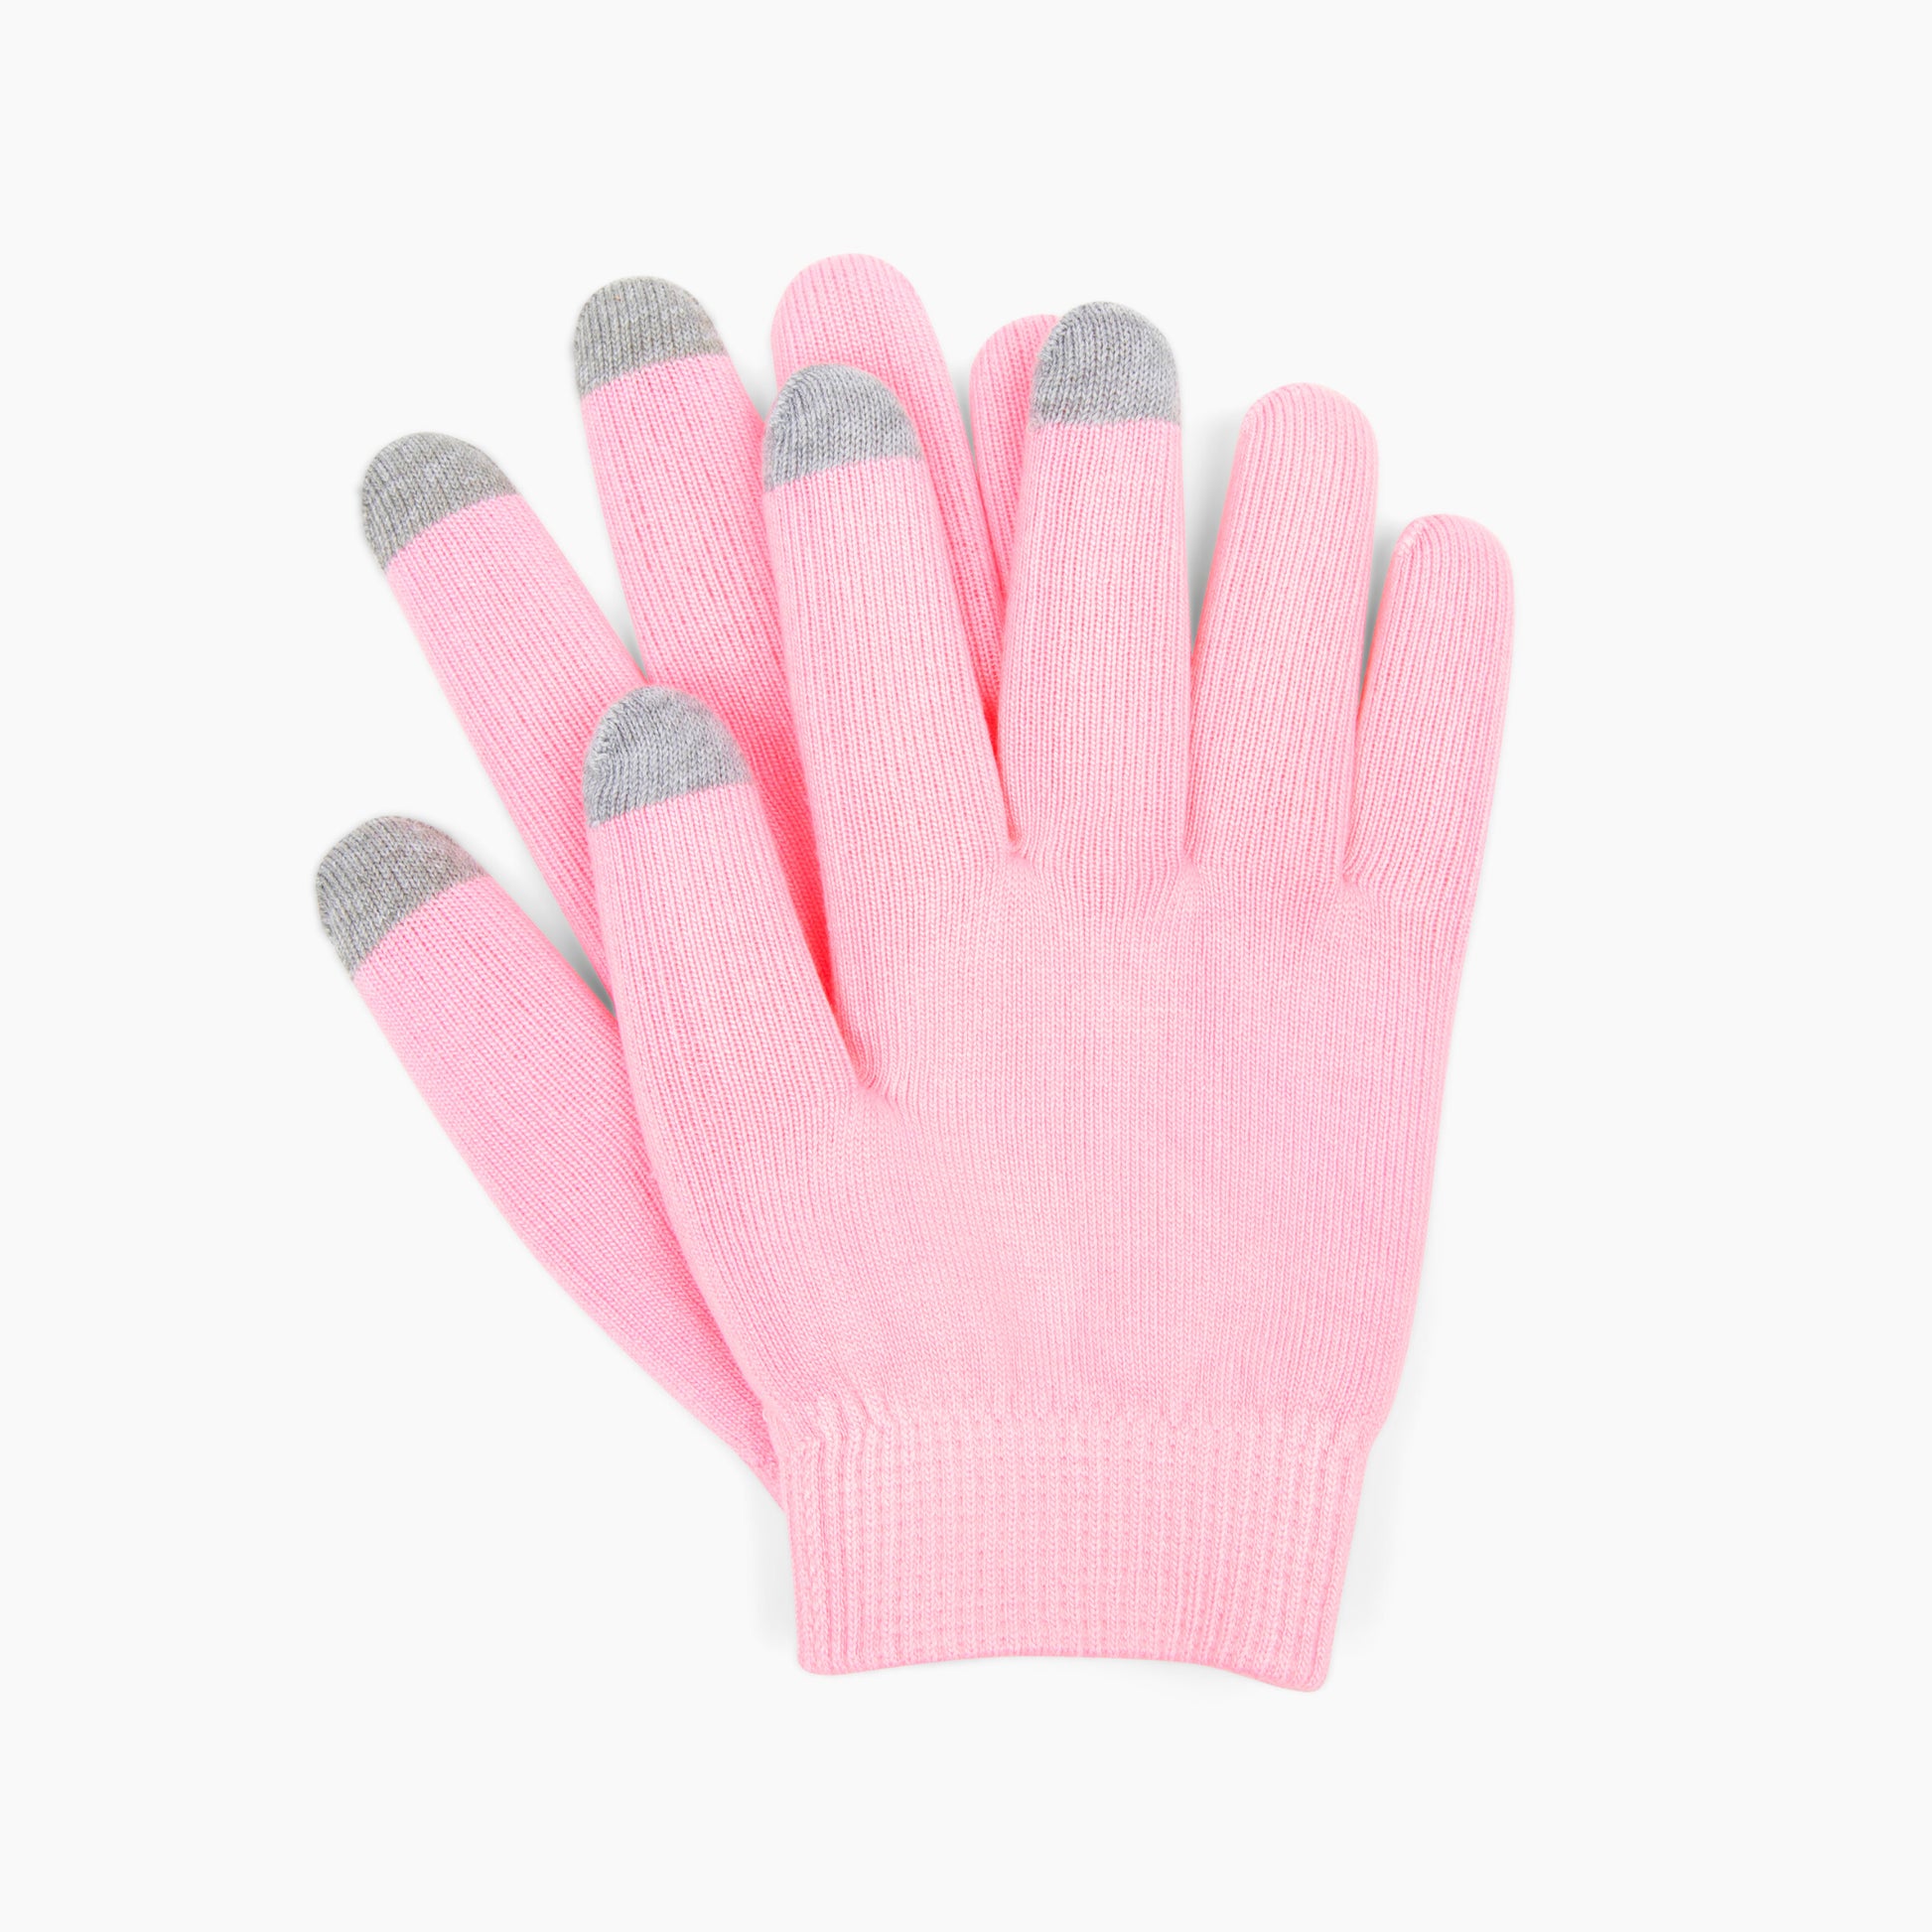 HYDRA Spa Infused Moisturizing Gloves - Spellbound